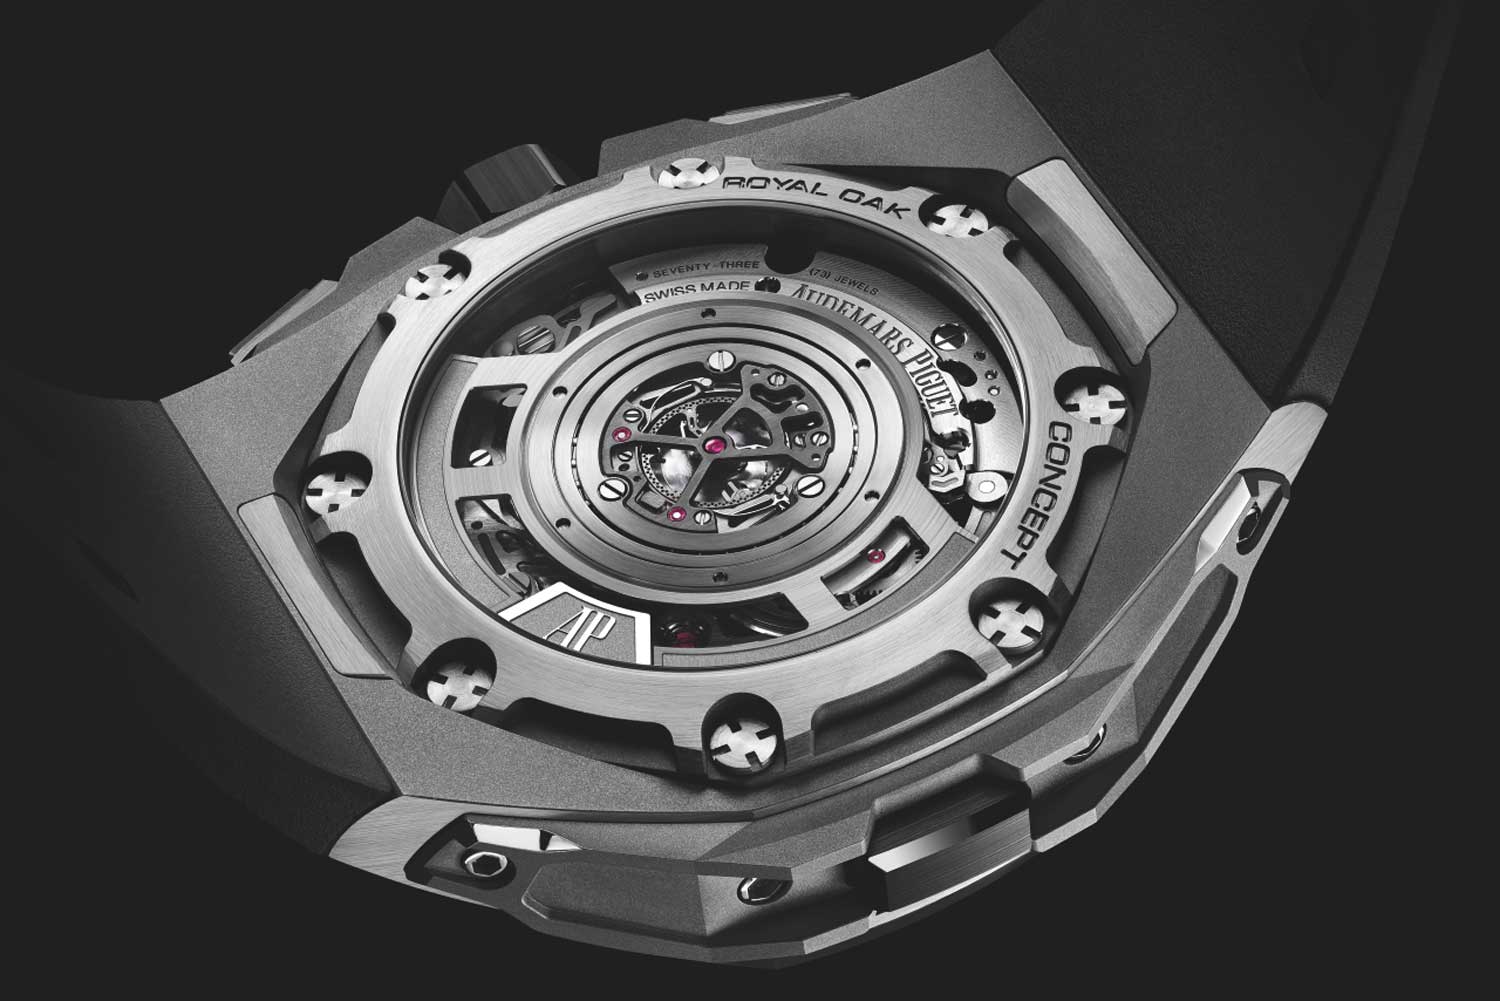 Audemars Piguet Royal Oak Concept Split-Seconds Chronograph GMT